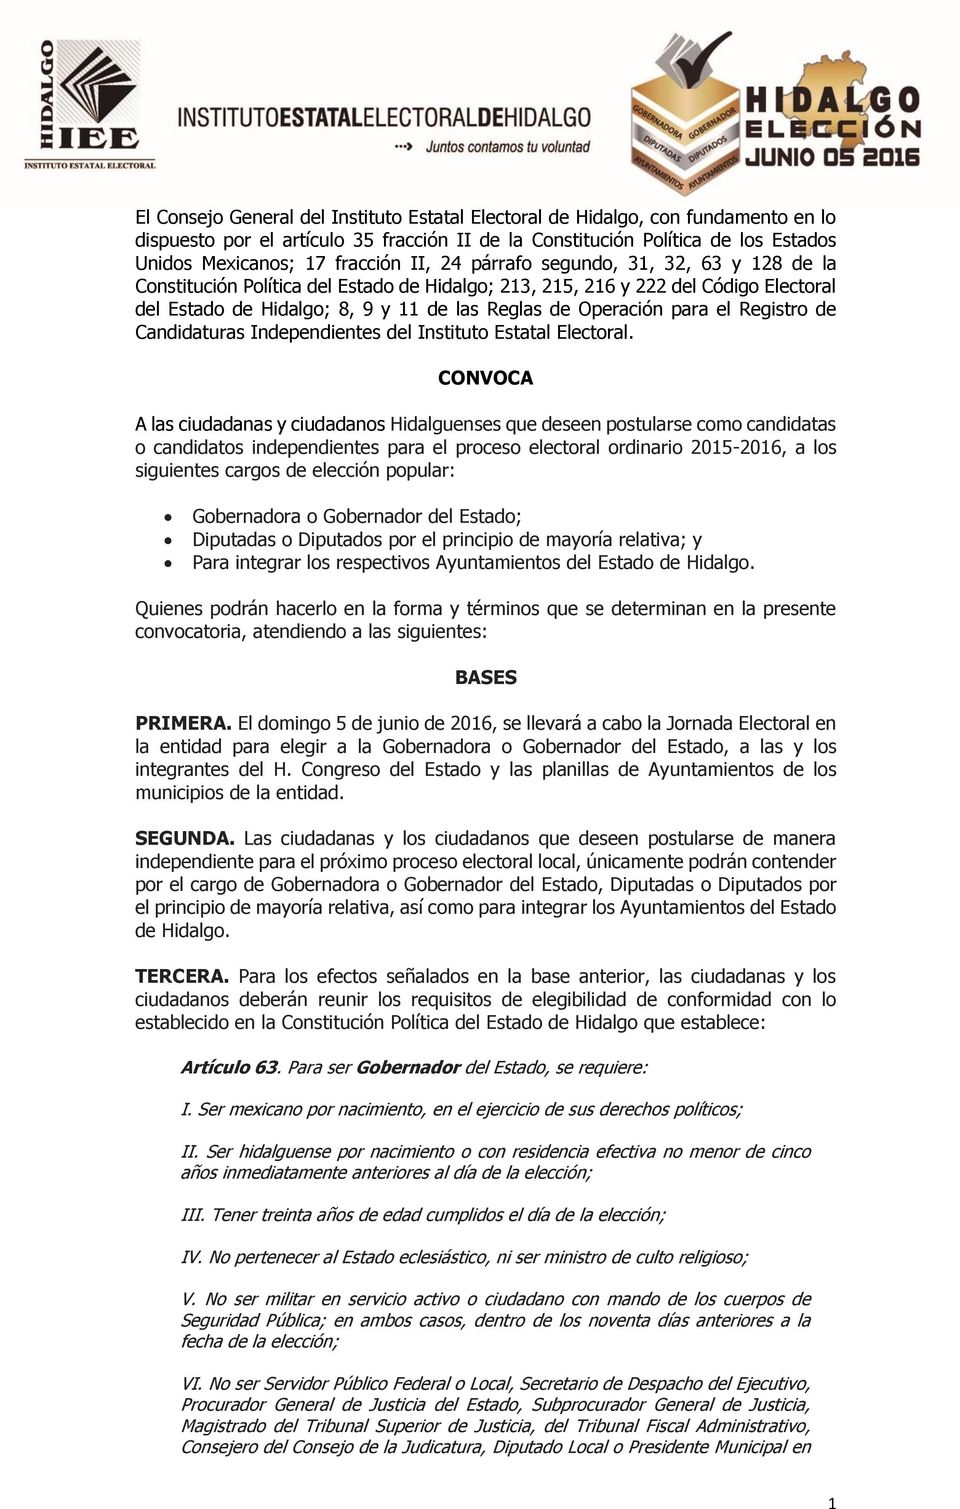 el Registro de Candidaturas Independientes del Instituto Estatal Electoral.